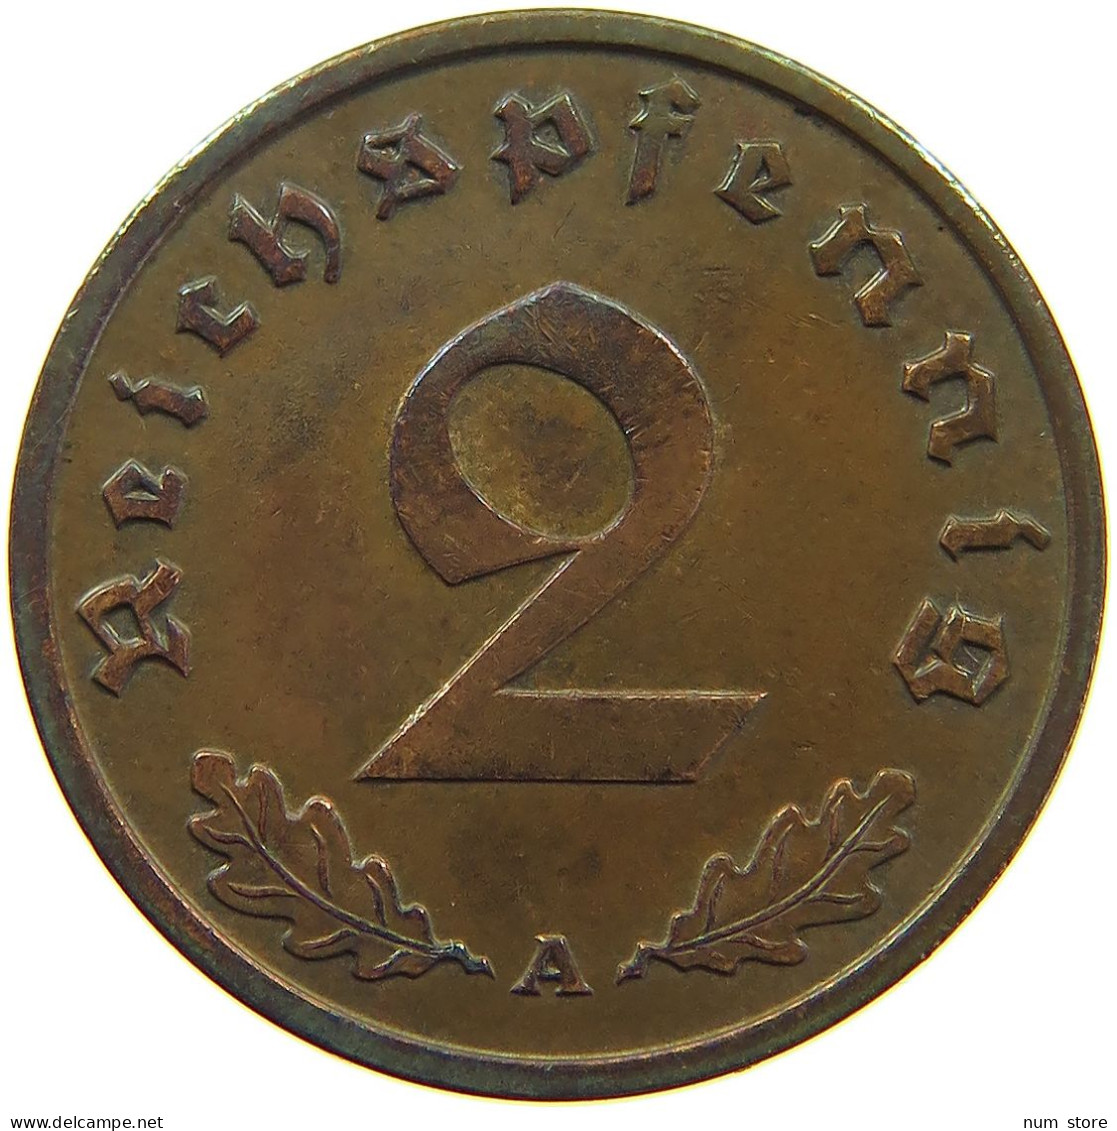 GERMANY 2 REICHSPFENNIG 1937 A #s095 0179 - 2 Reichspfennig